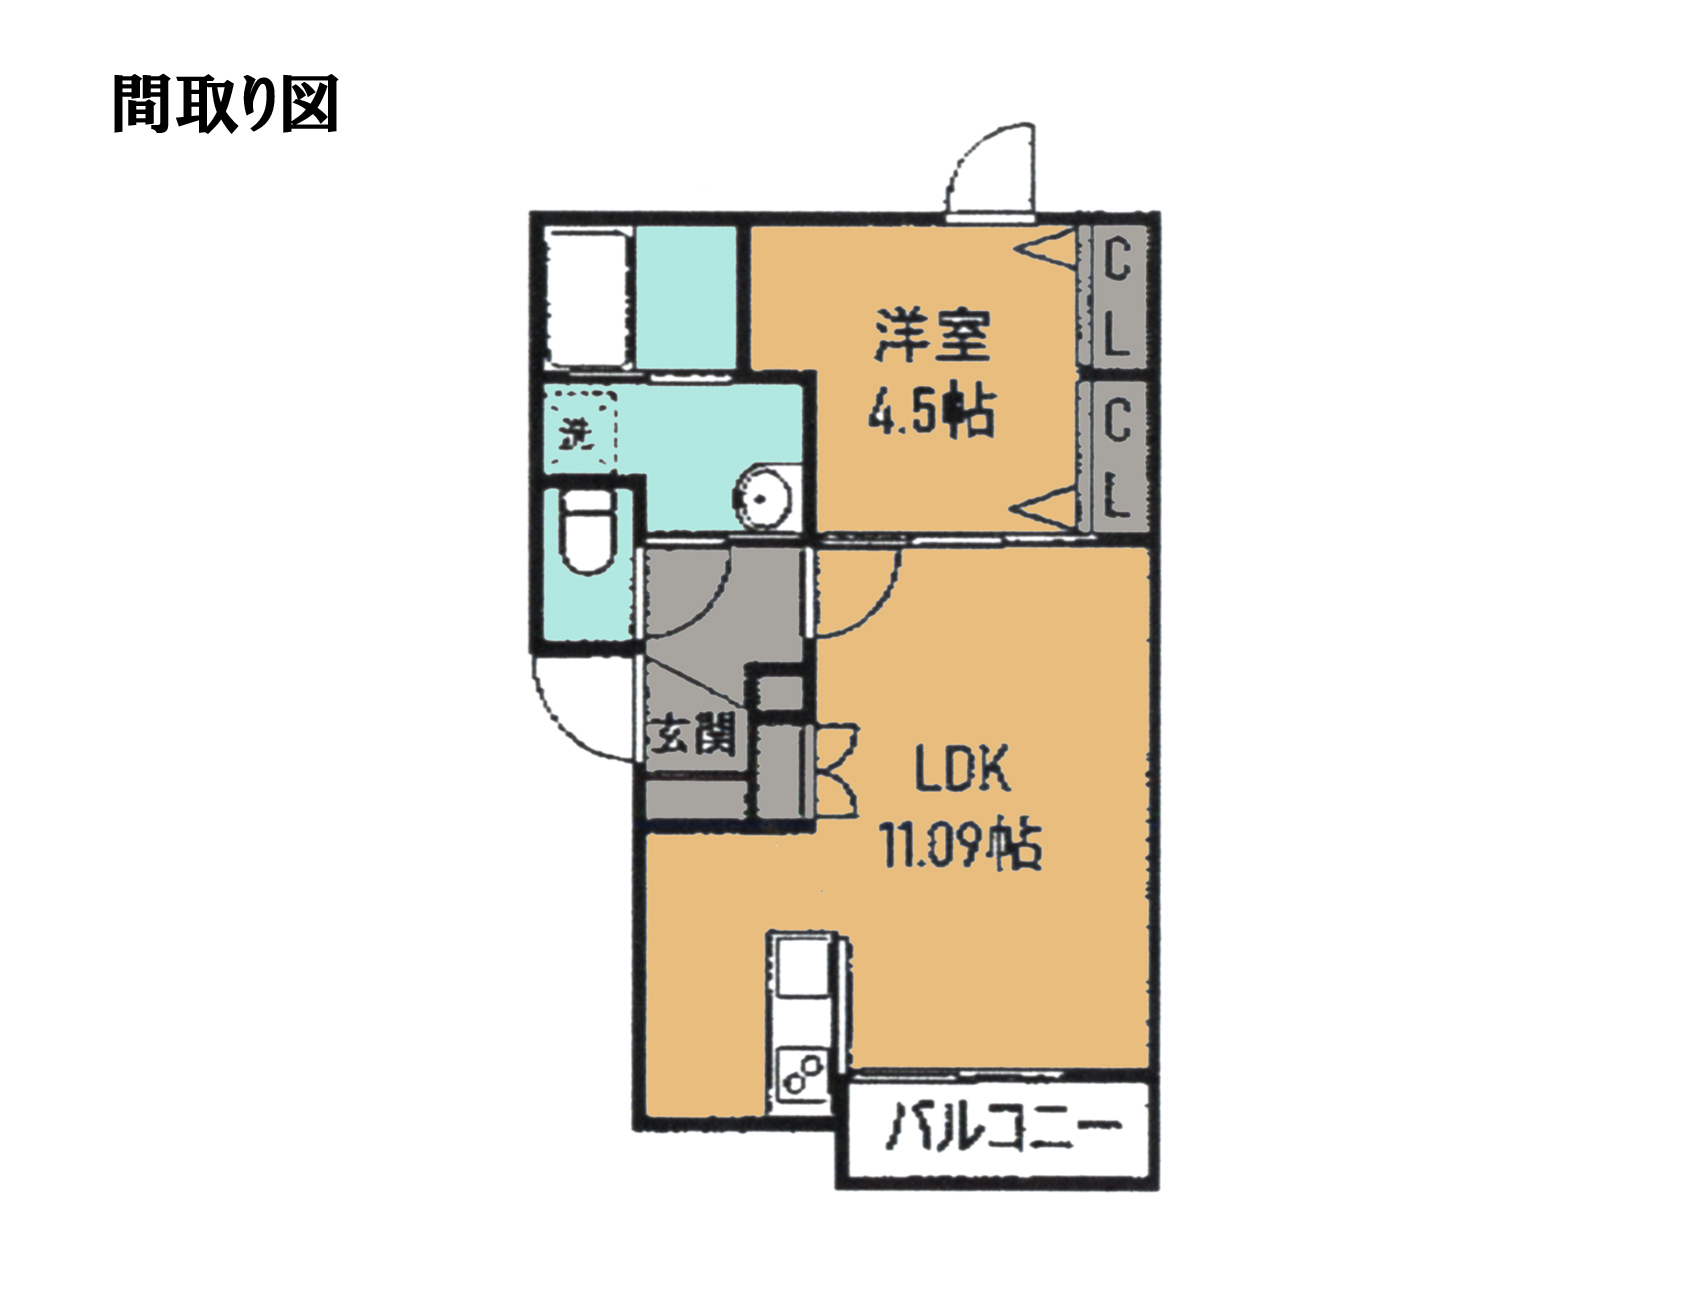 1階につき4部屋、エントランスを挟んで間取りが左右対称になります。